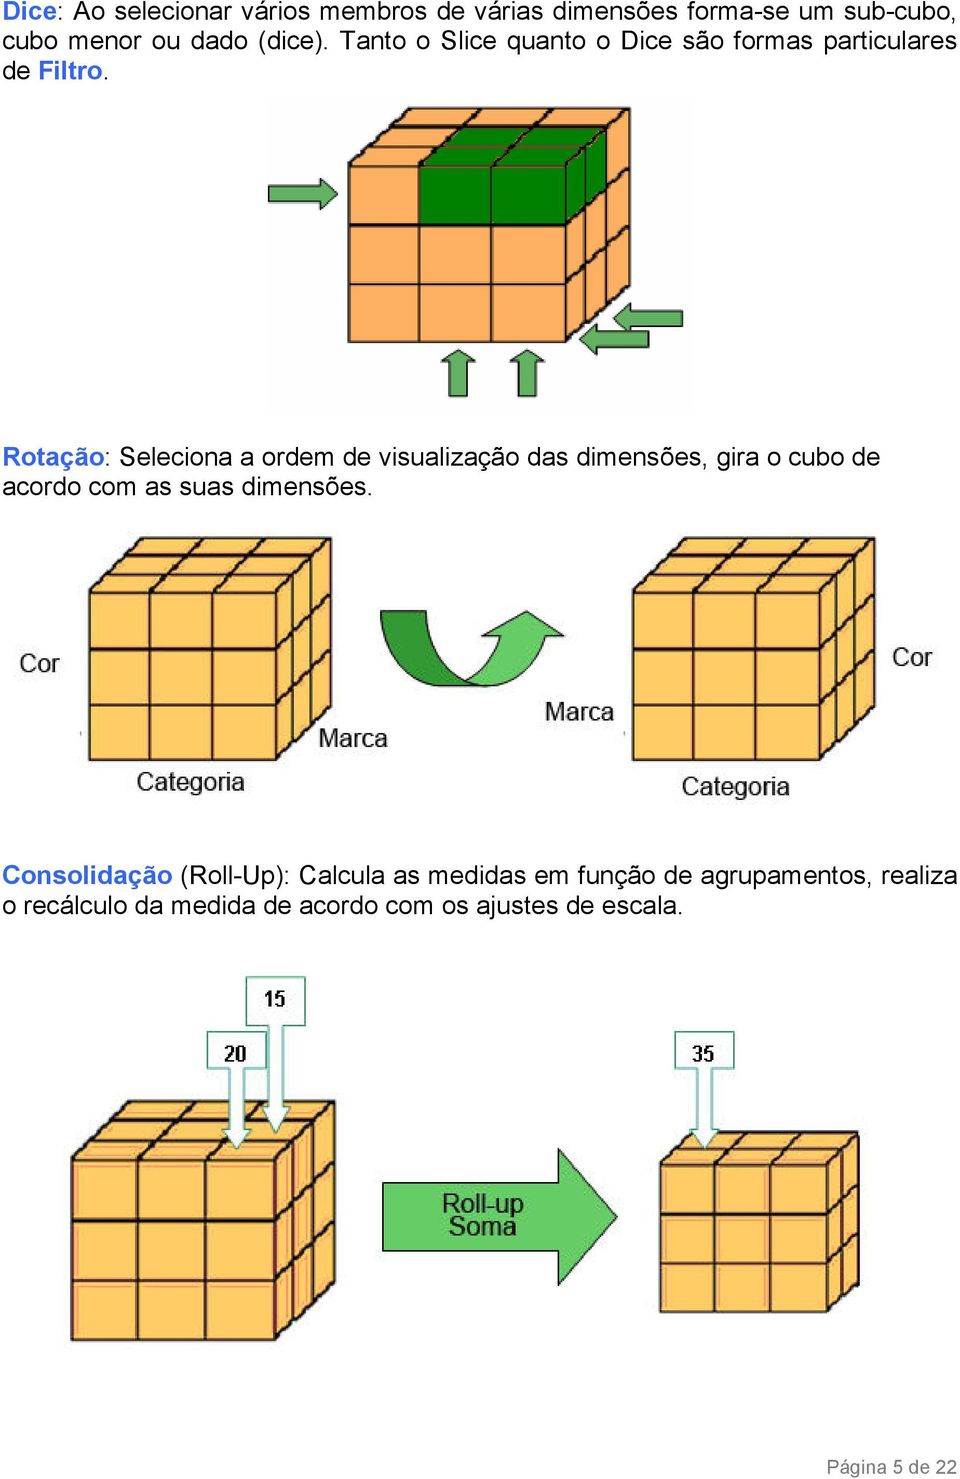 Rotação: Seleciona a ordem de visualização das dimensões, gira o cubo de acordo com as suas dimensões.